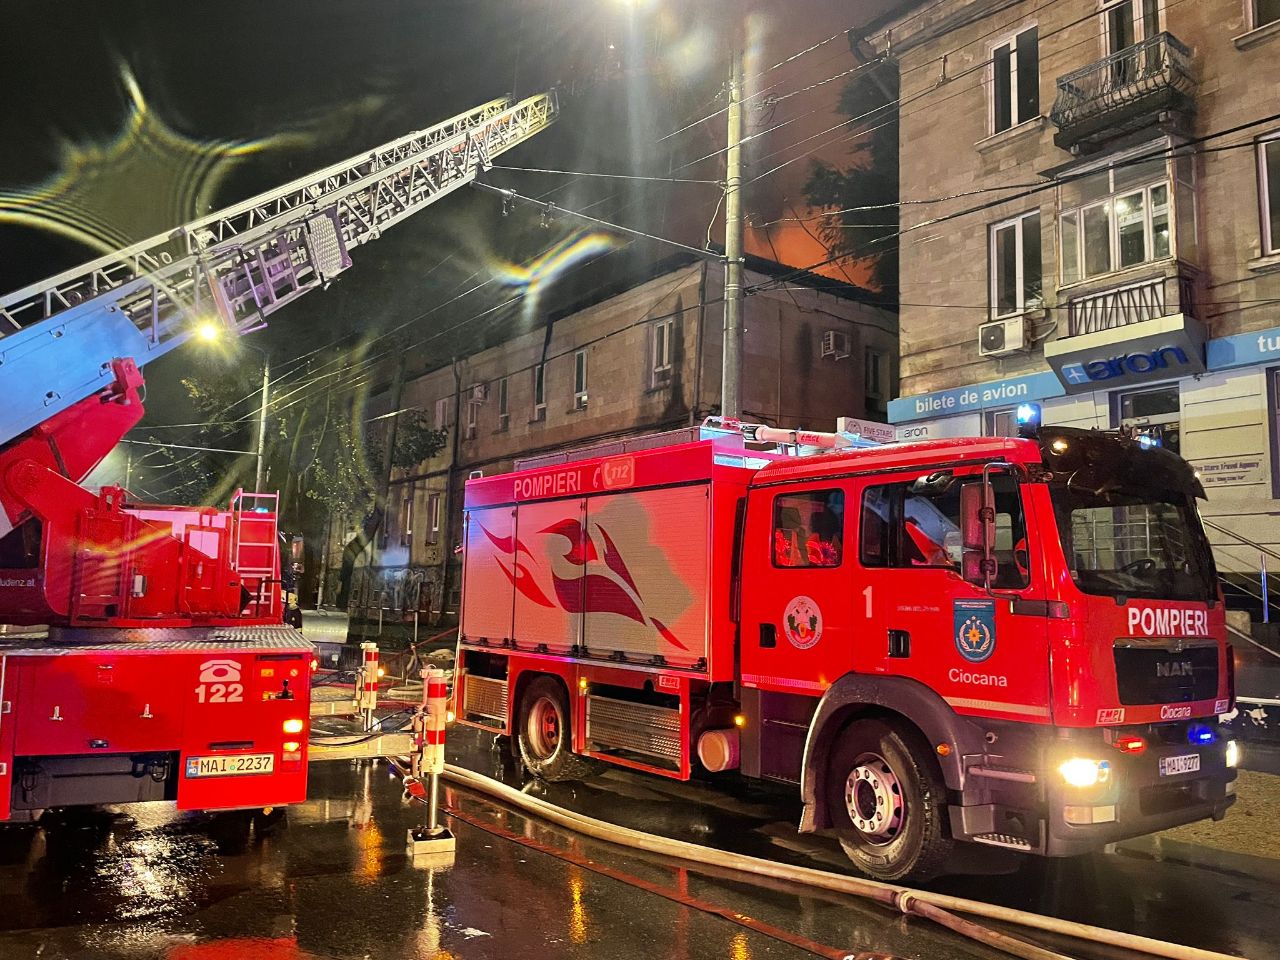 (ФОТО) В центре Кишинева горело здание Ассоциации незрячих. Что рассказали в службе спасателей